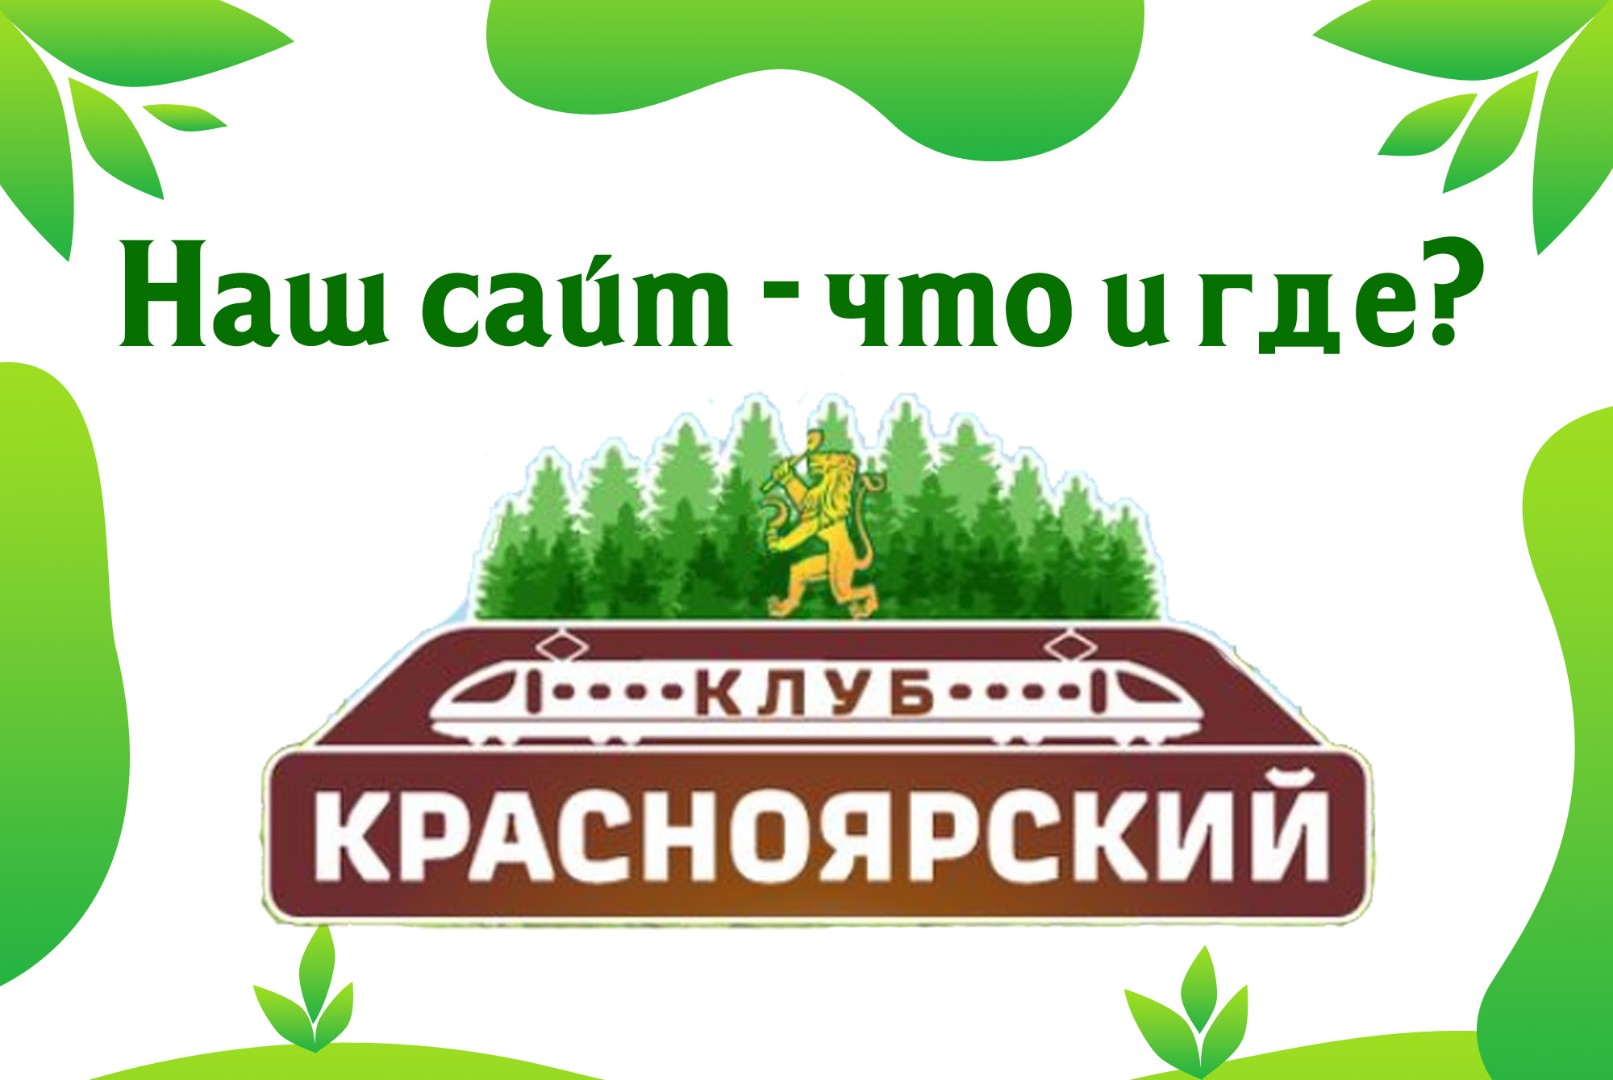 Сайт Красноярской дороги